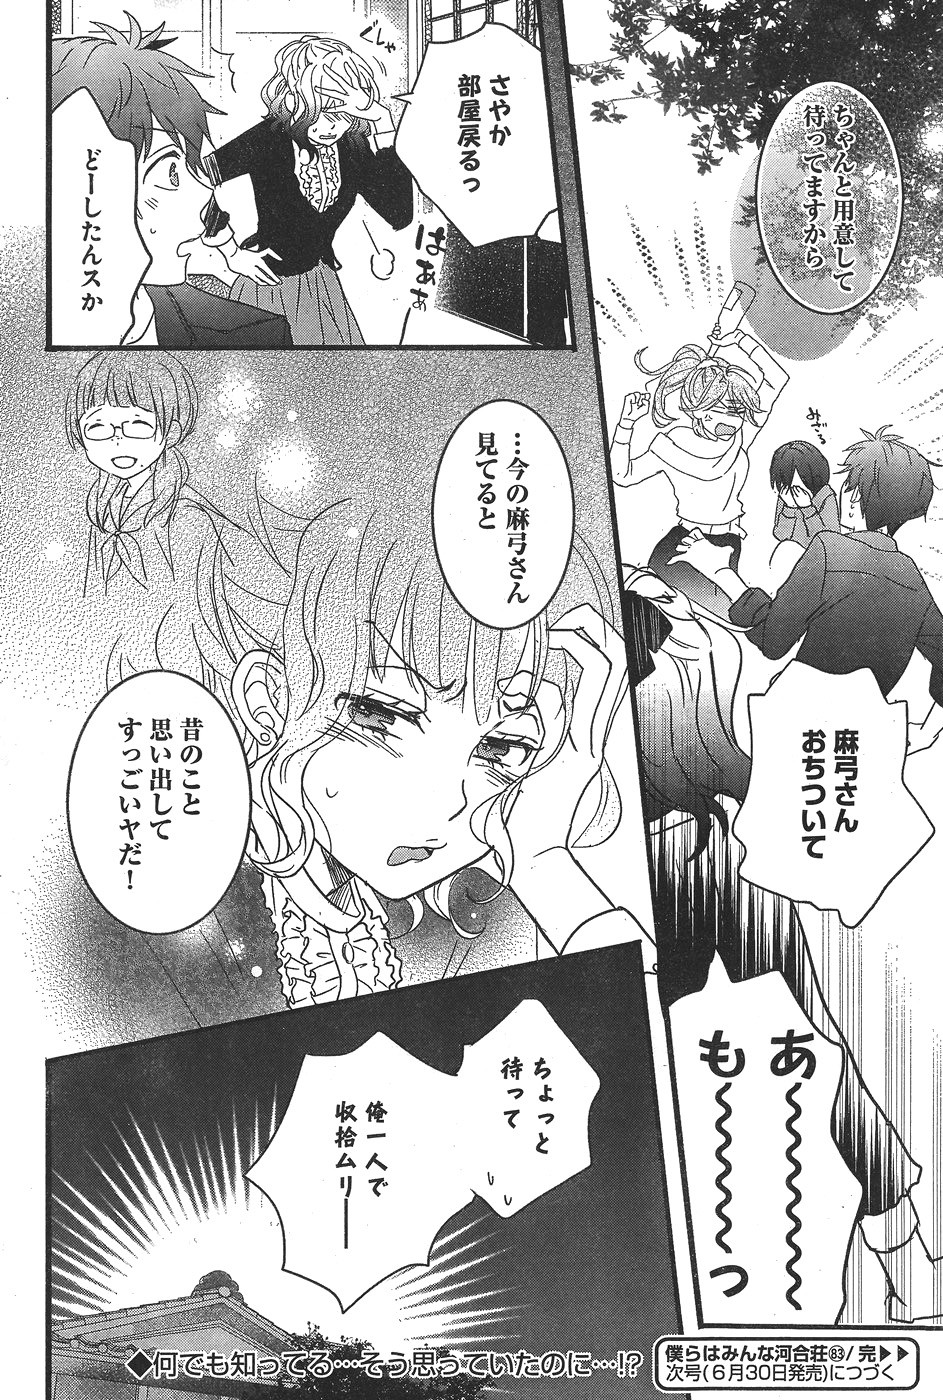 Bokura wa Minna Kawaisou - Chapter 83 - Page 23